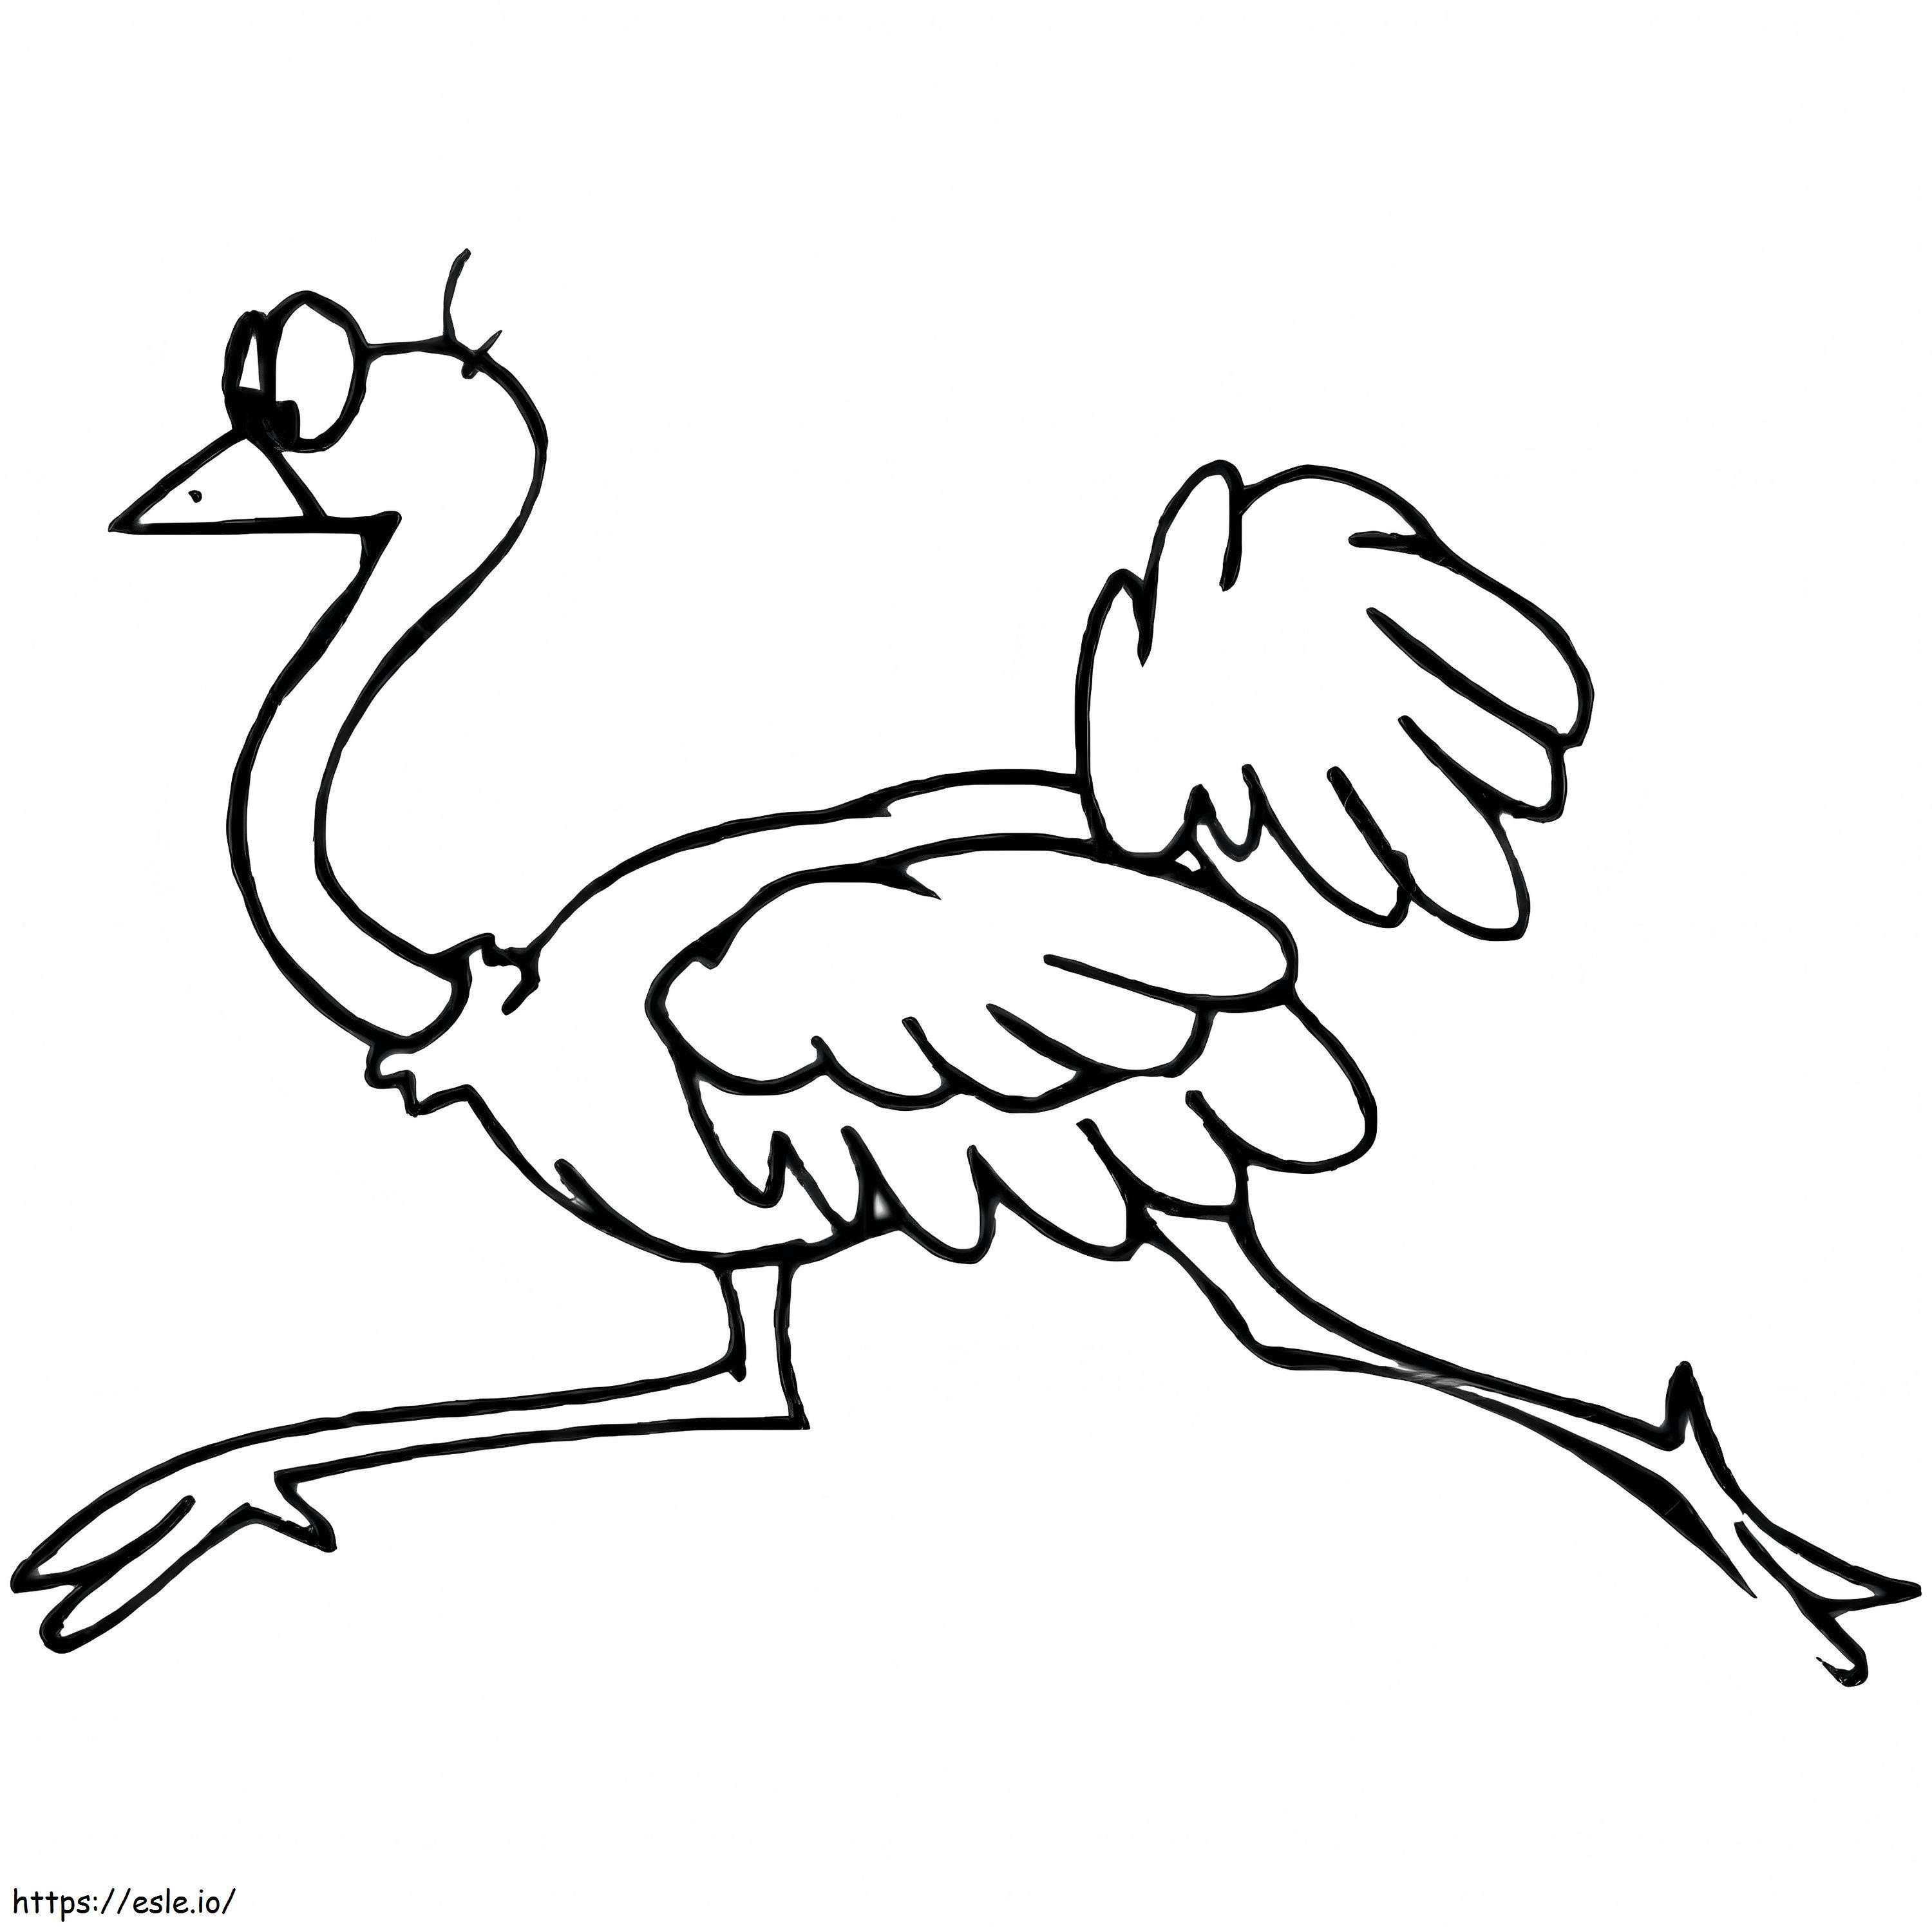 Avestruz correndo para colorir